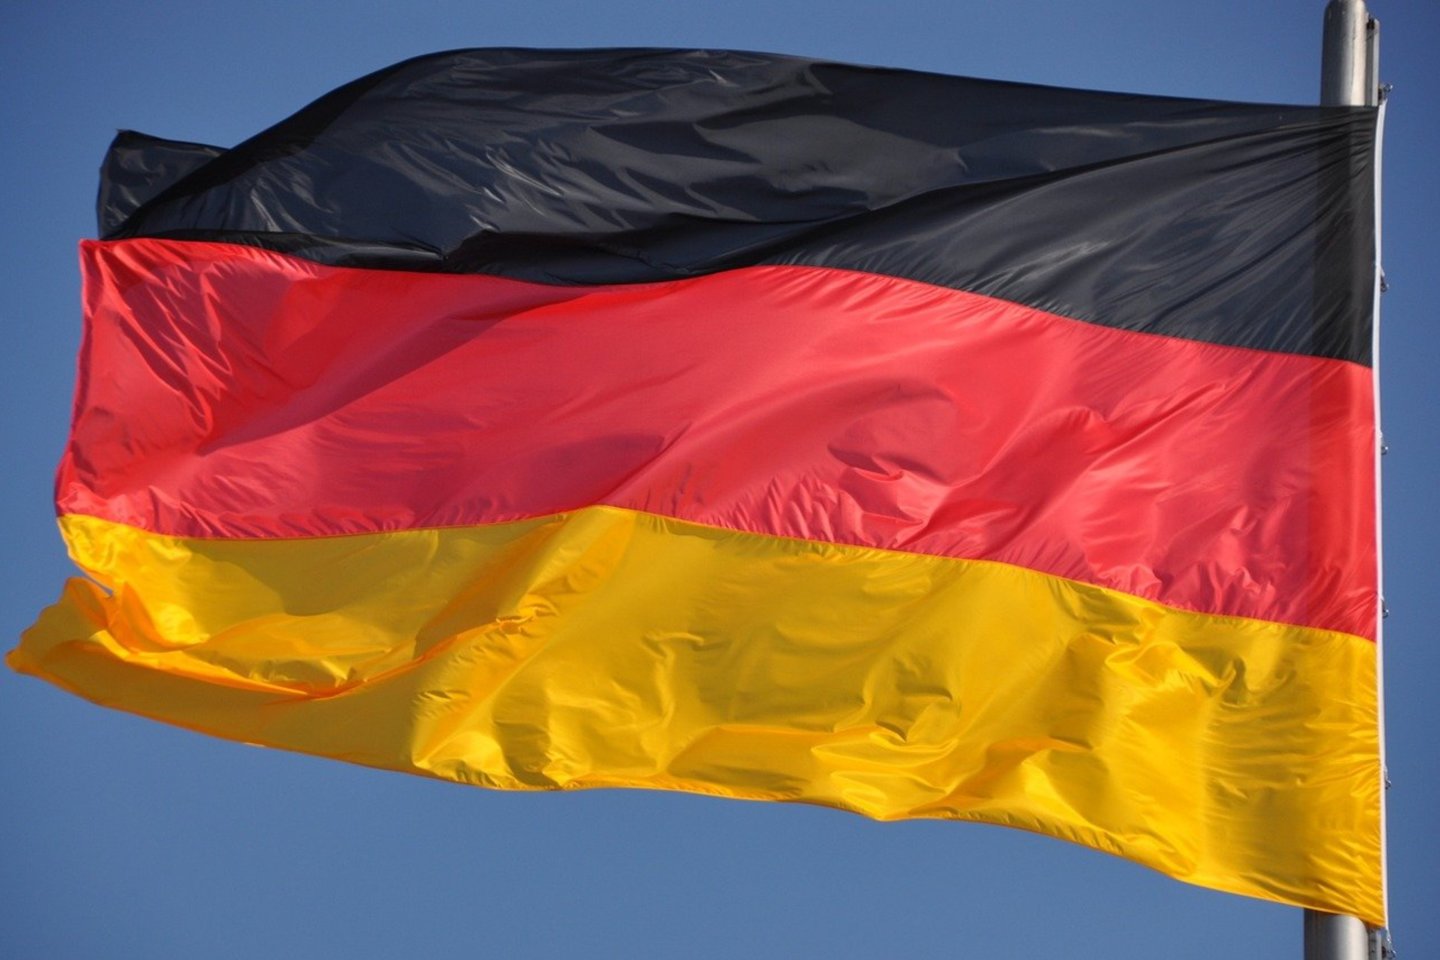 Vokietijos ekonomika praėjusių ir šių metų sandūroje paniro į recesiją, rodo oficialūs duomenys.<br>Pixabay nuotr.